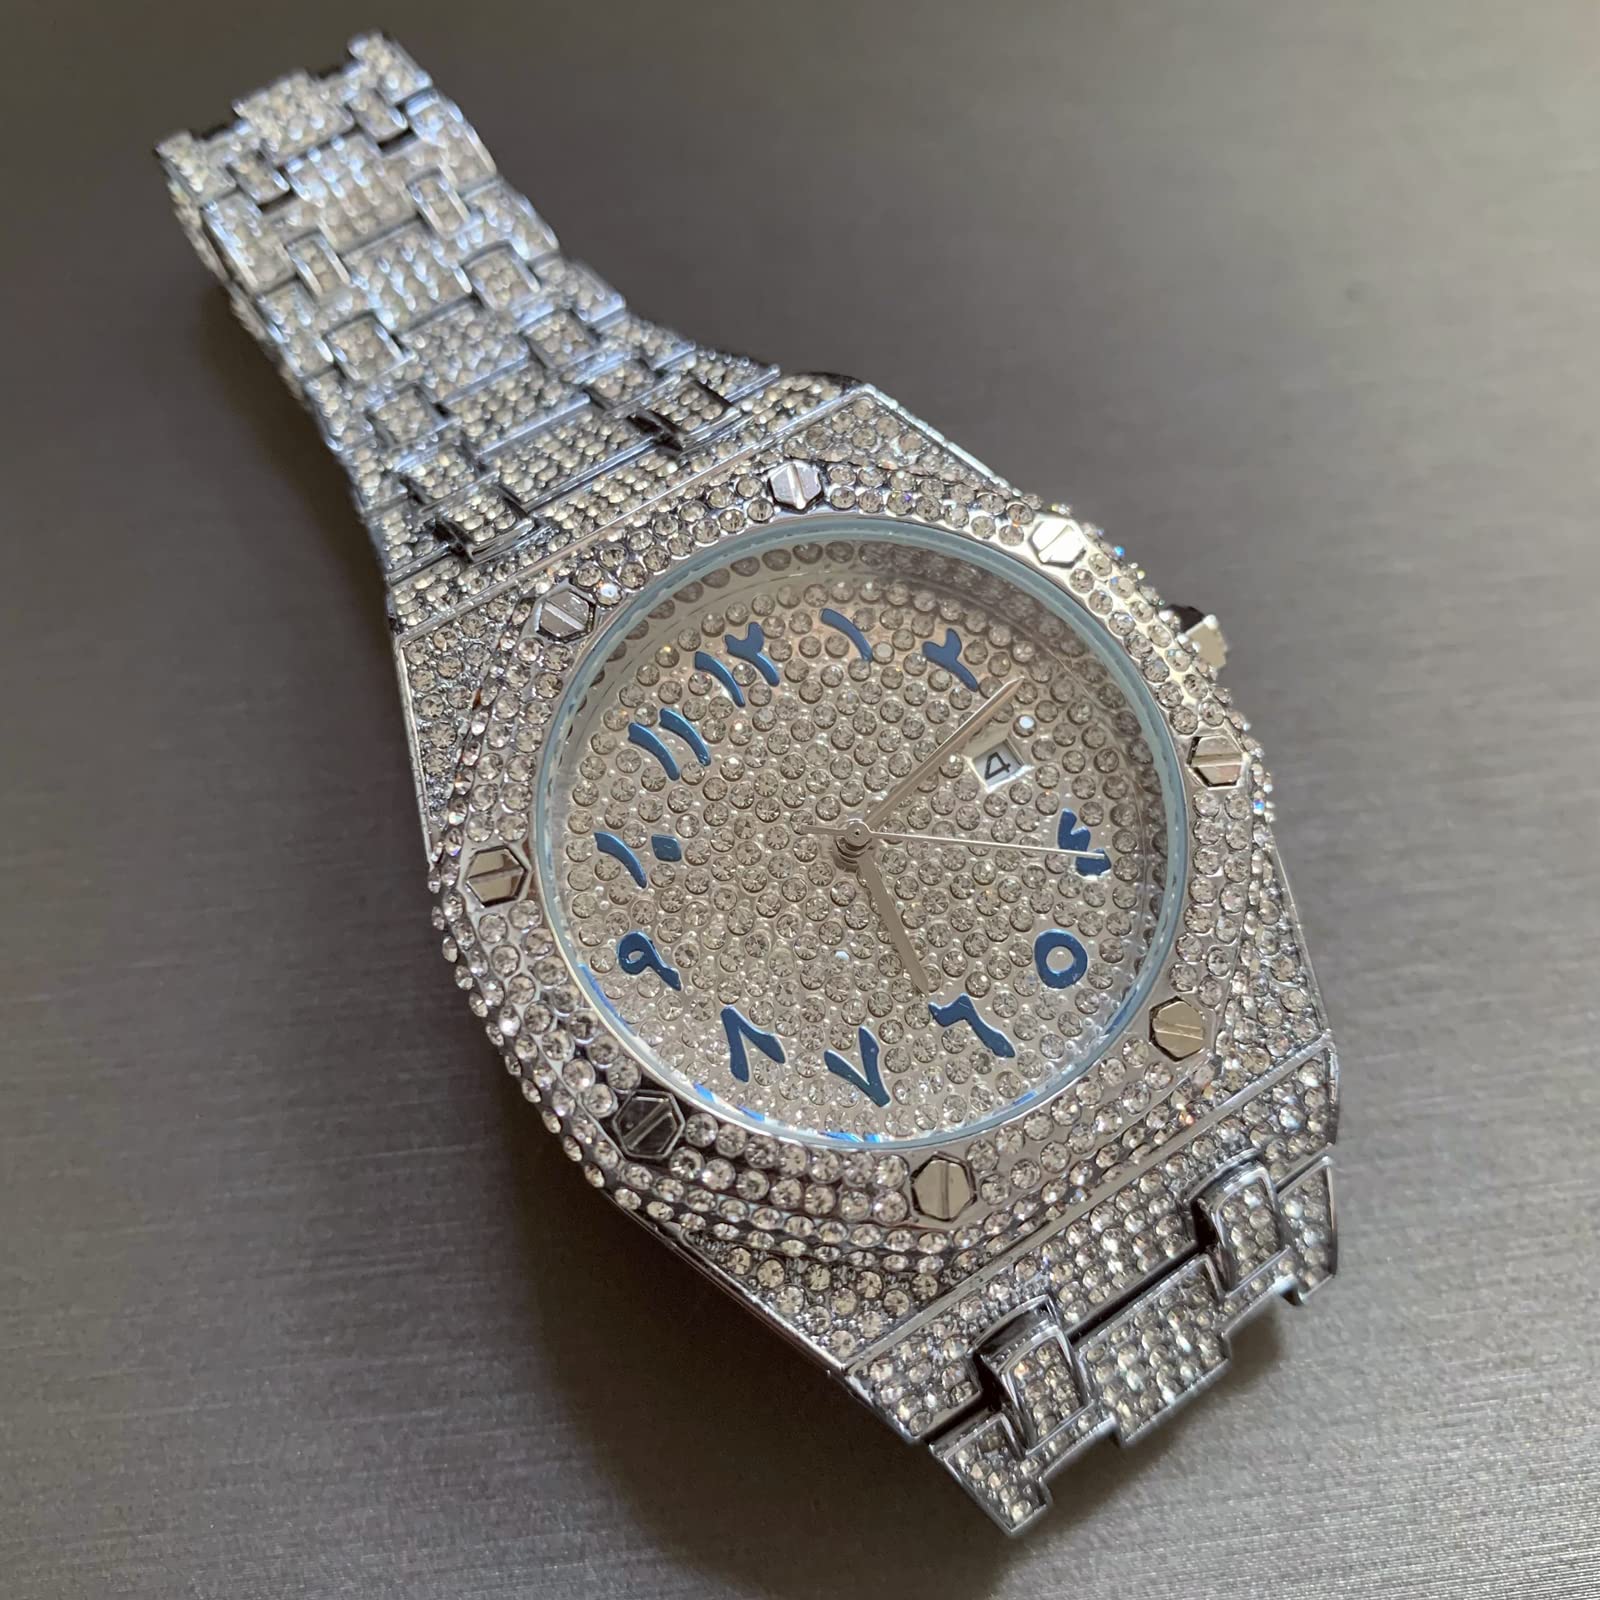 ICEDIAMOND CZ Diamant Charm Quarz Armbanduhr, vereist helle Zirkonsteine 43mm Kalender Zifferblatt Hip Hop Trend Schmuck Uhr für Männer